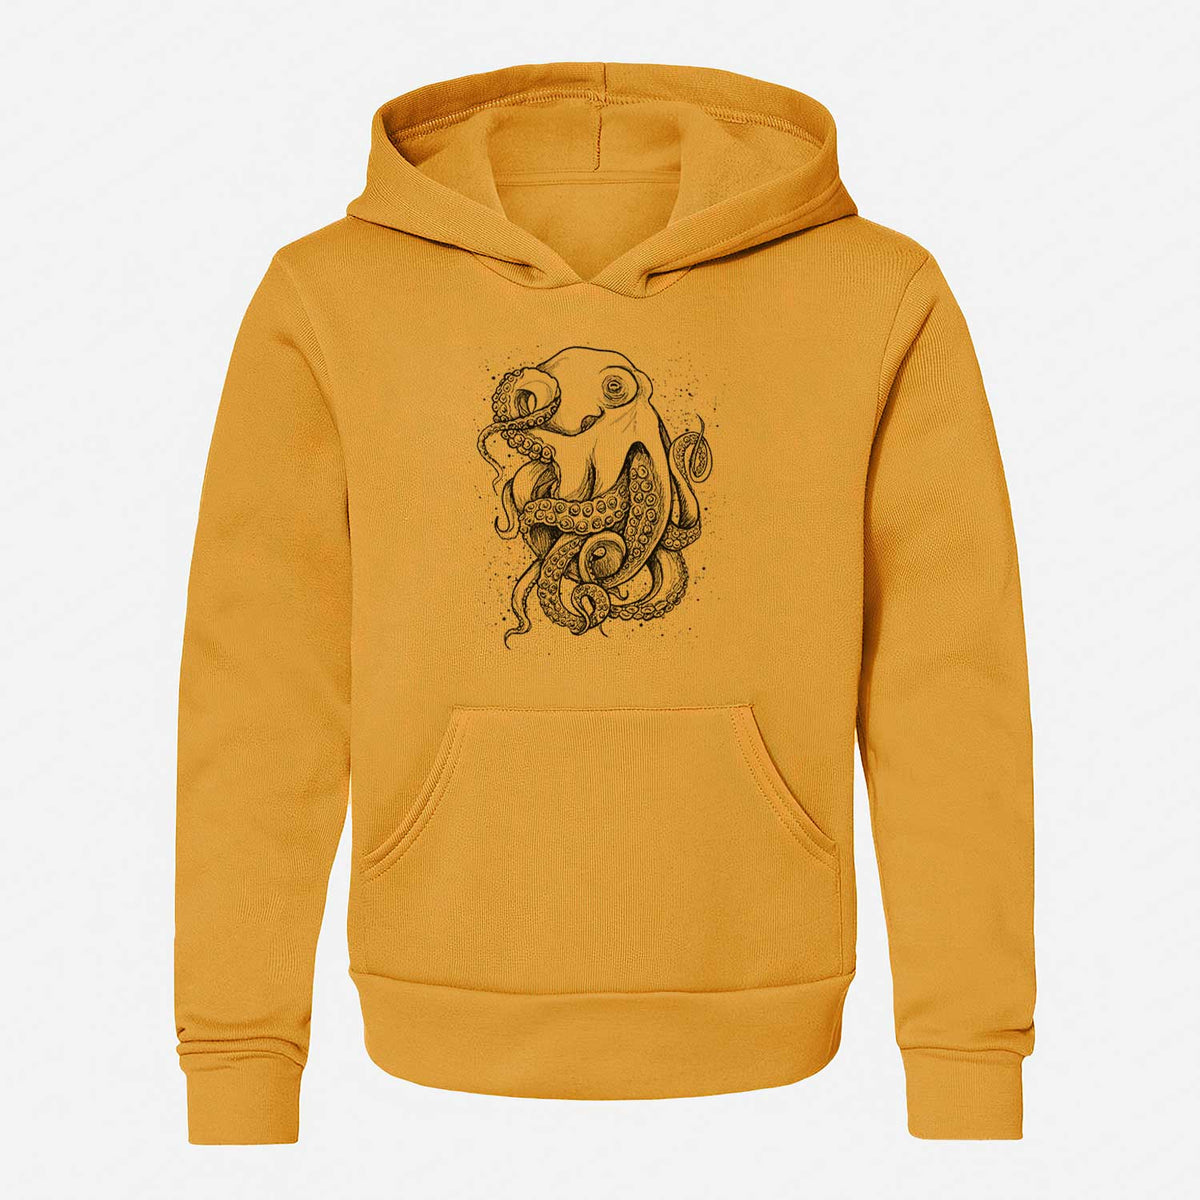 Octopus Vulgaris - Common Octopus - Youth Hoodie Sweatshirt